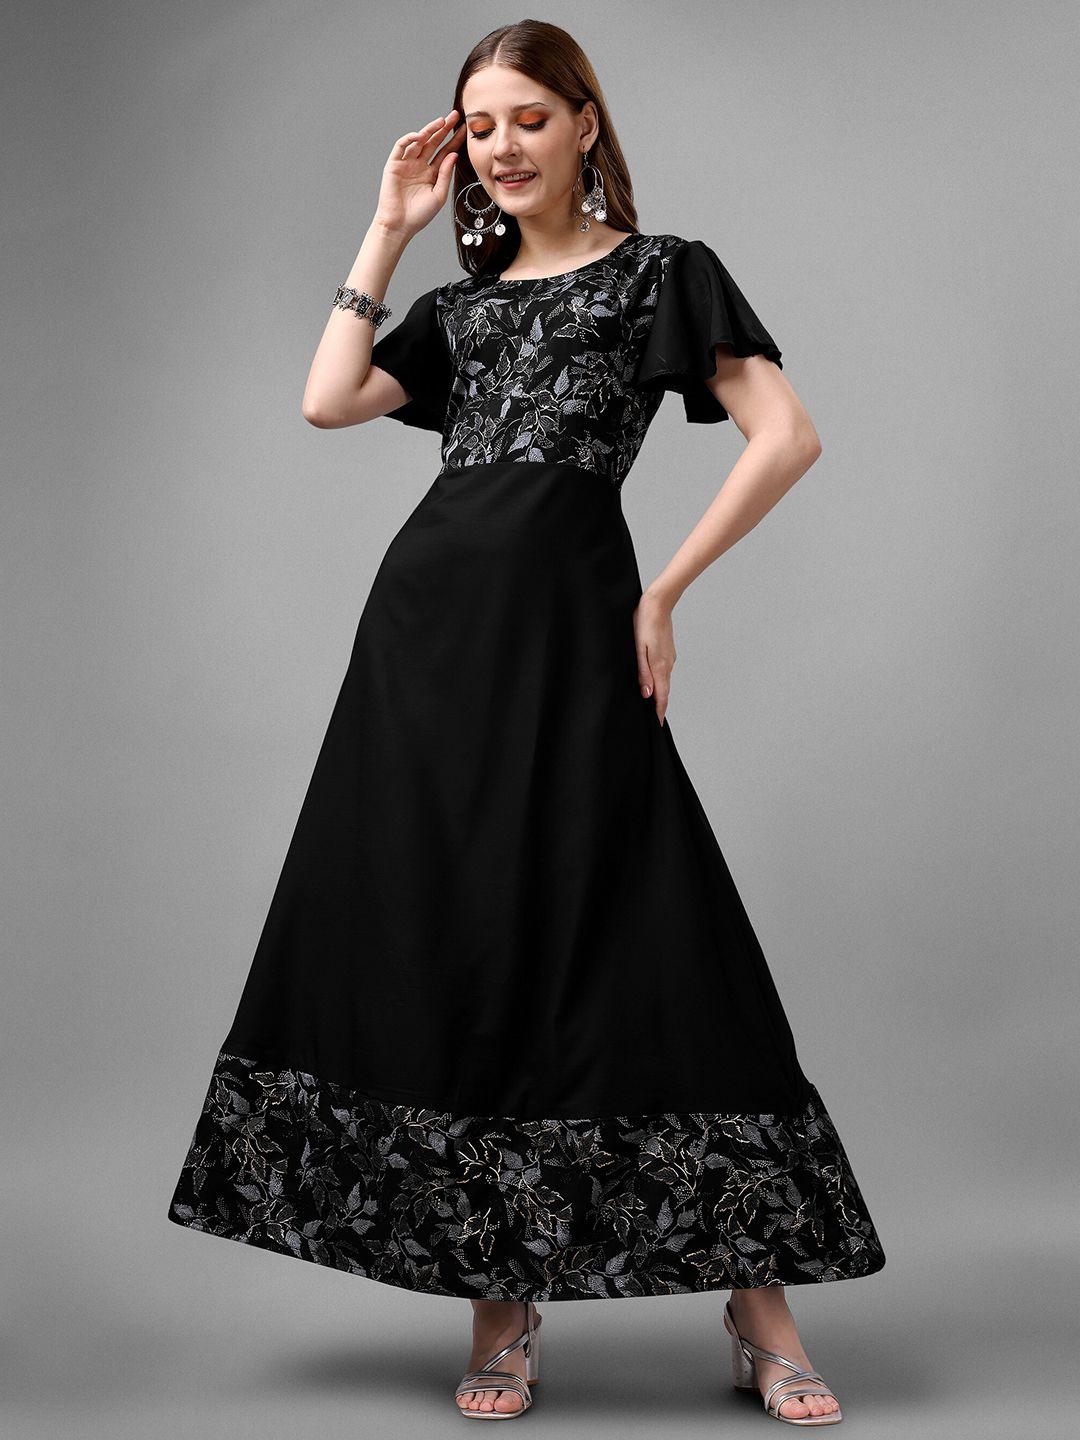 aspora black crepe maxi dress